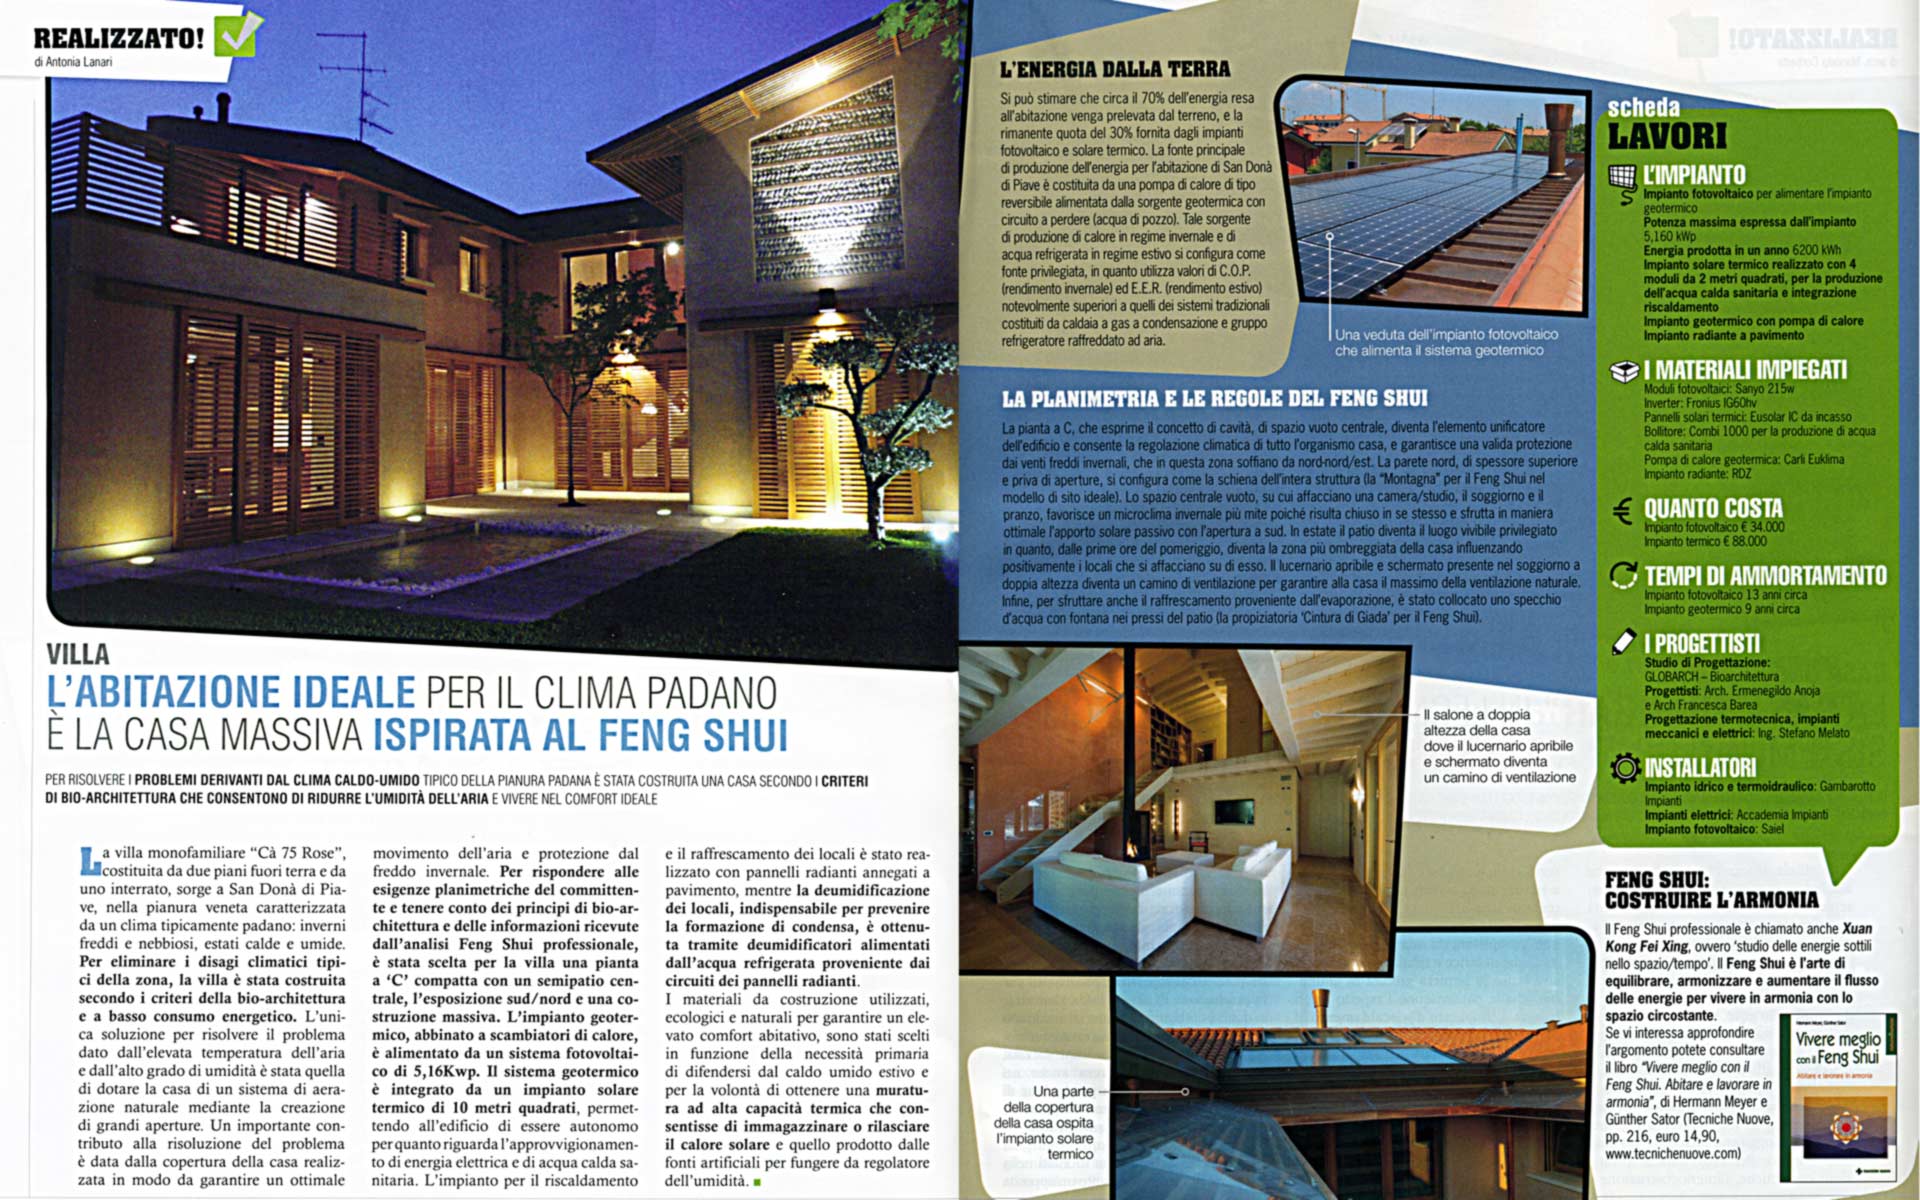 Abitazione ideale ispirata al Feng Shui - Articolo su 